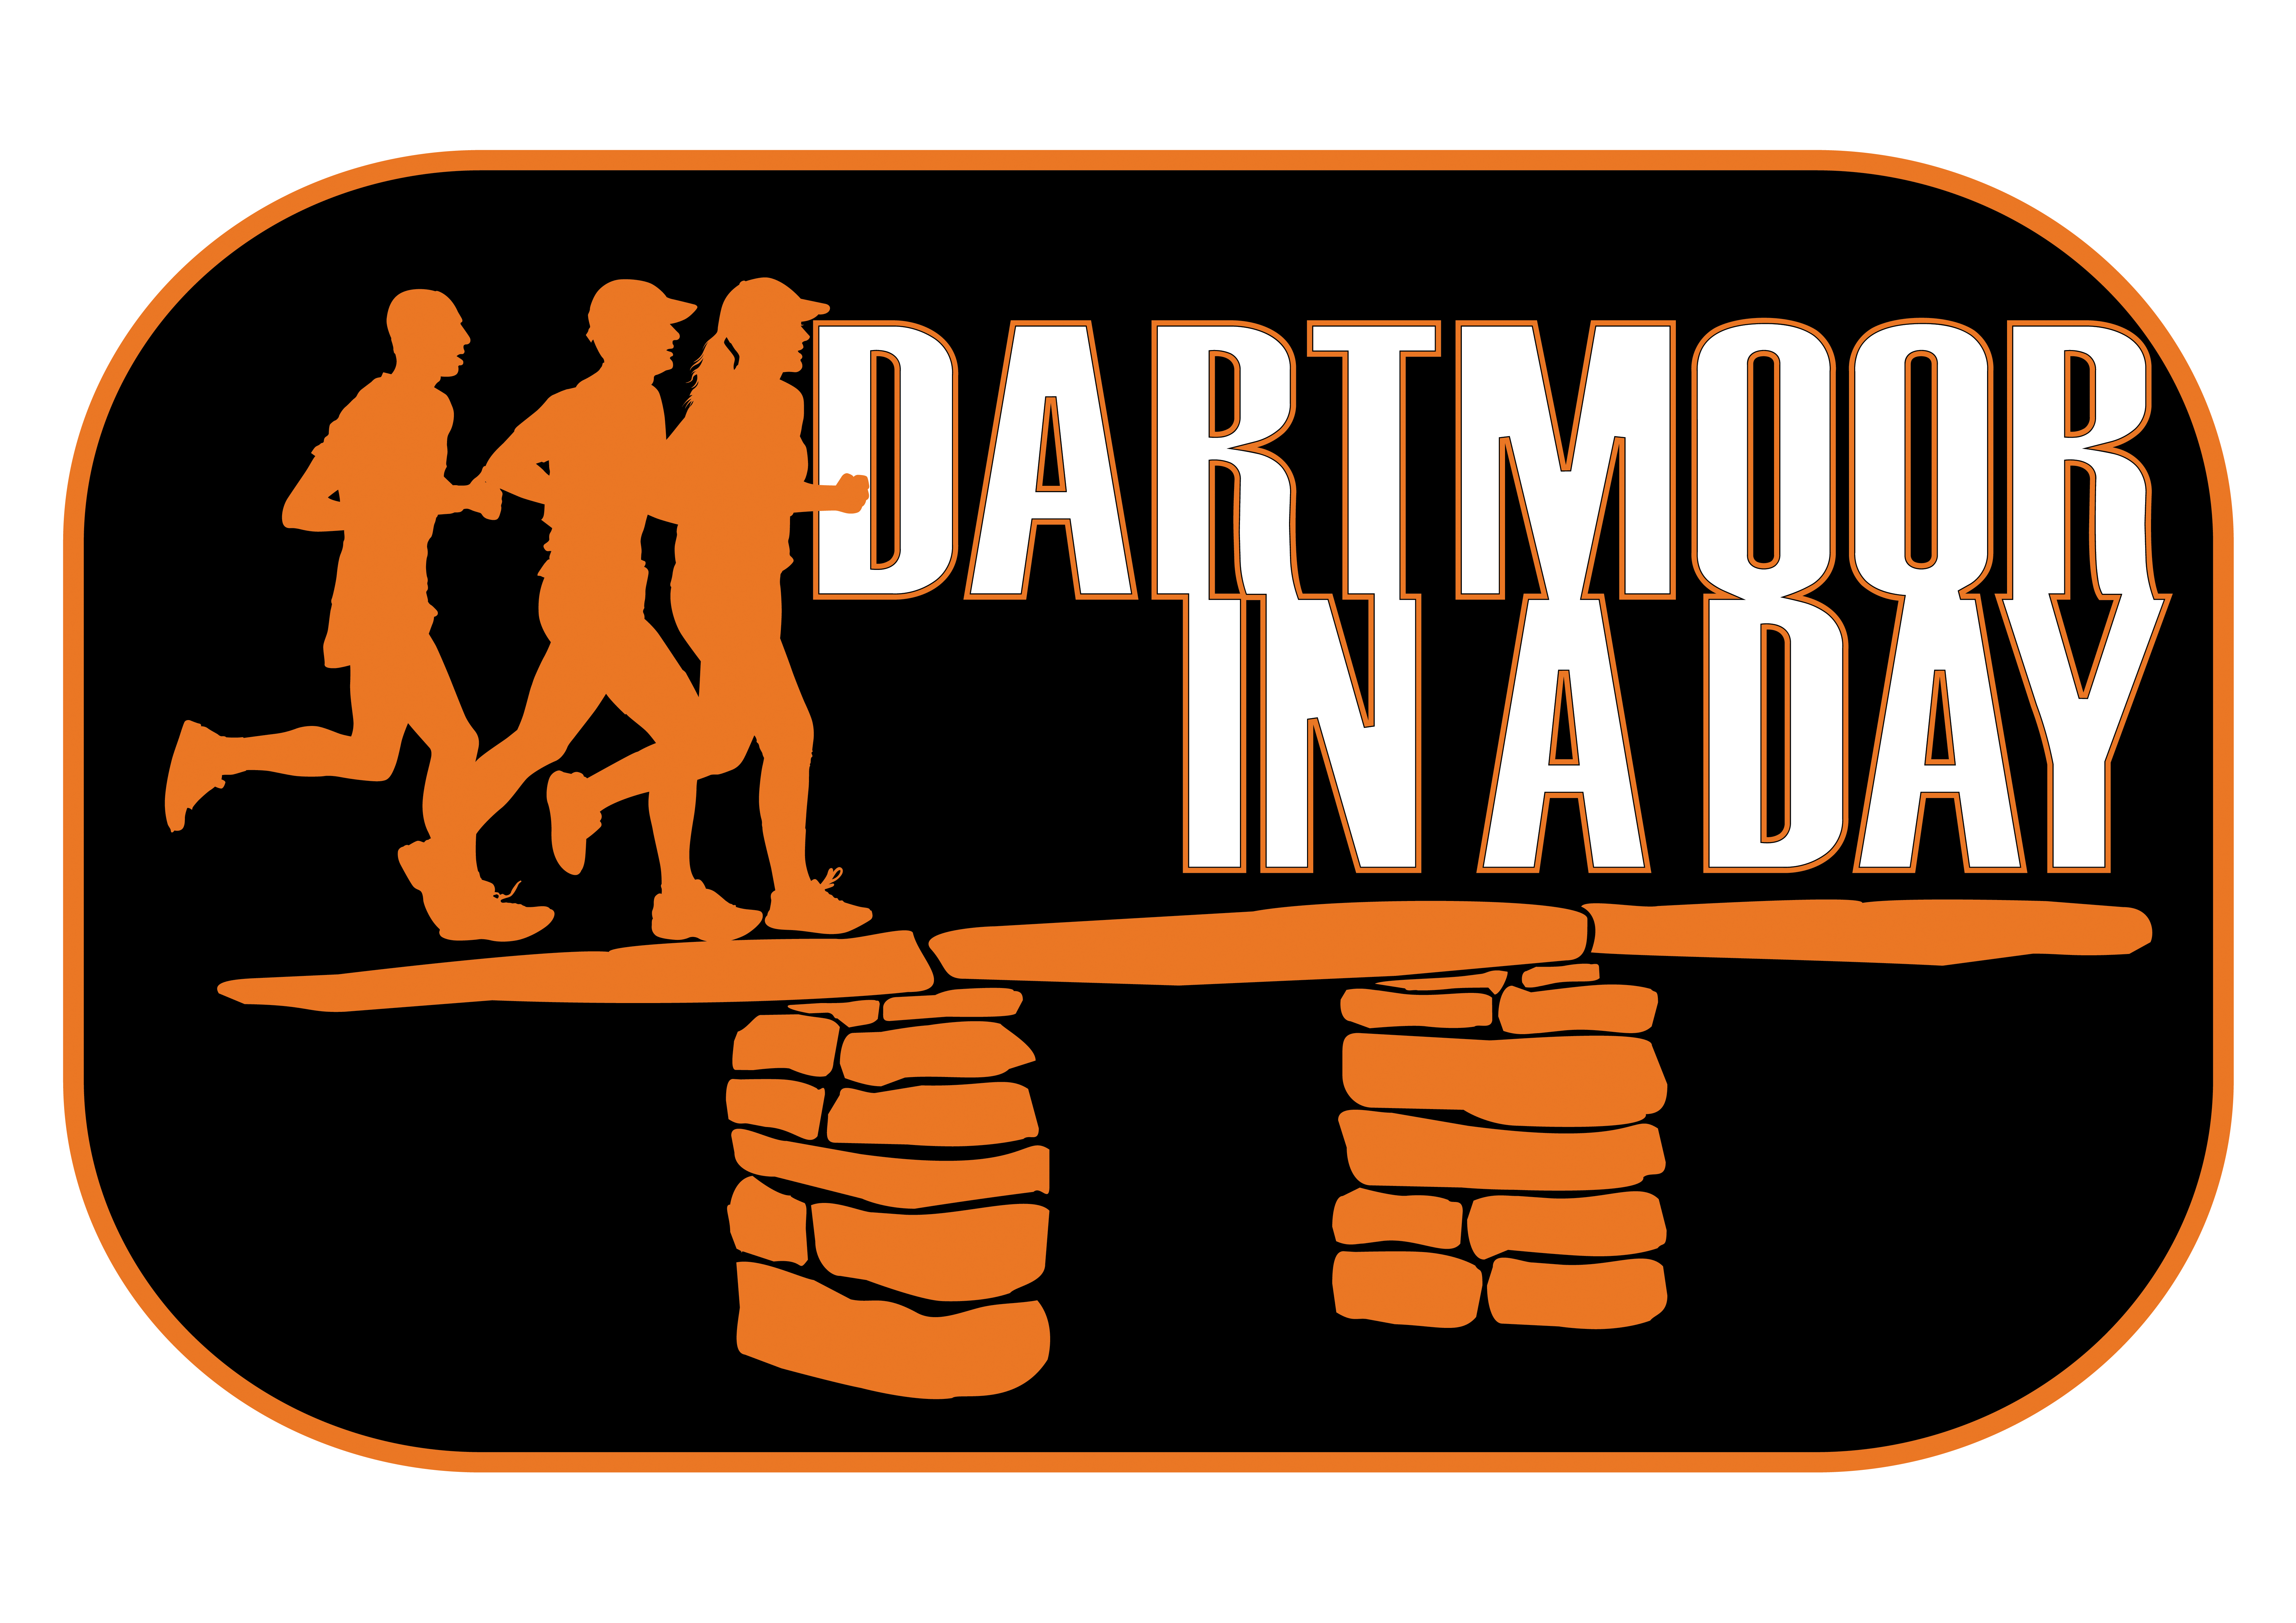 Dartmoor in a day. Runner clipart walking challenge